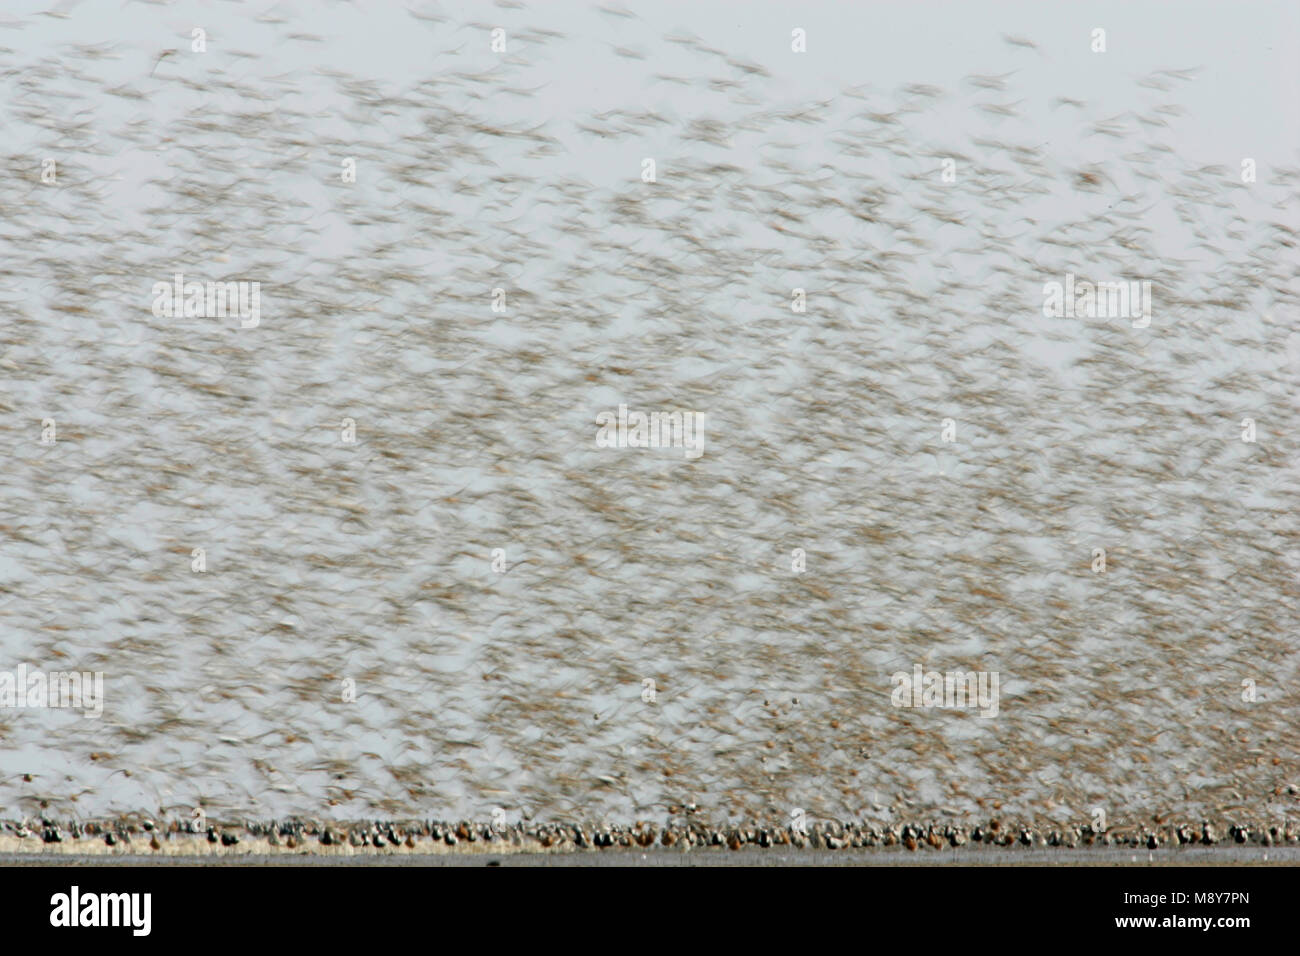 Steltlopers vliegend bij hoogwatervluchtplaats; Waders flying with high tide Stock Photo